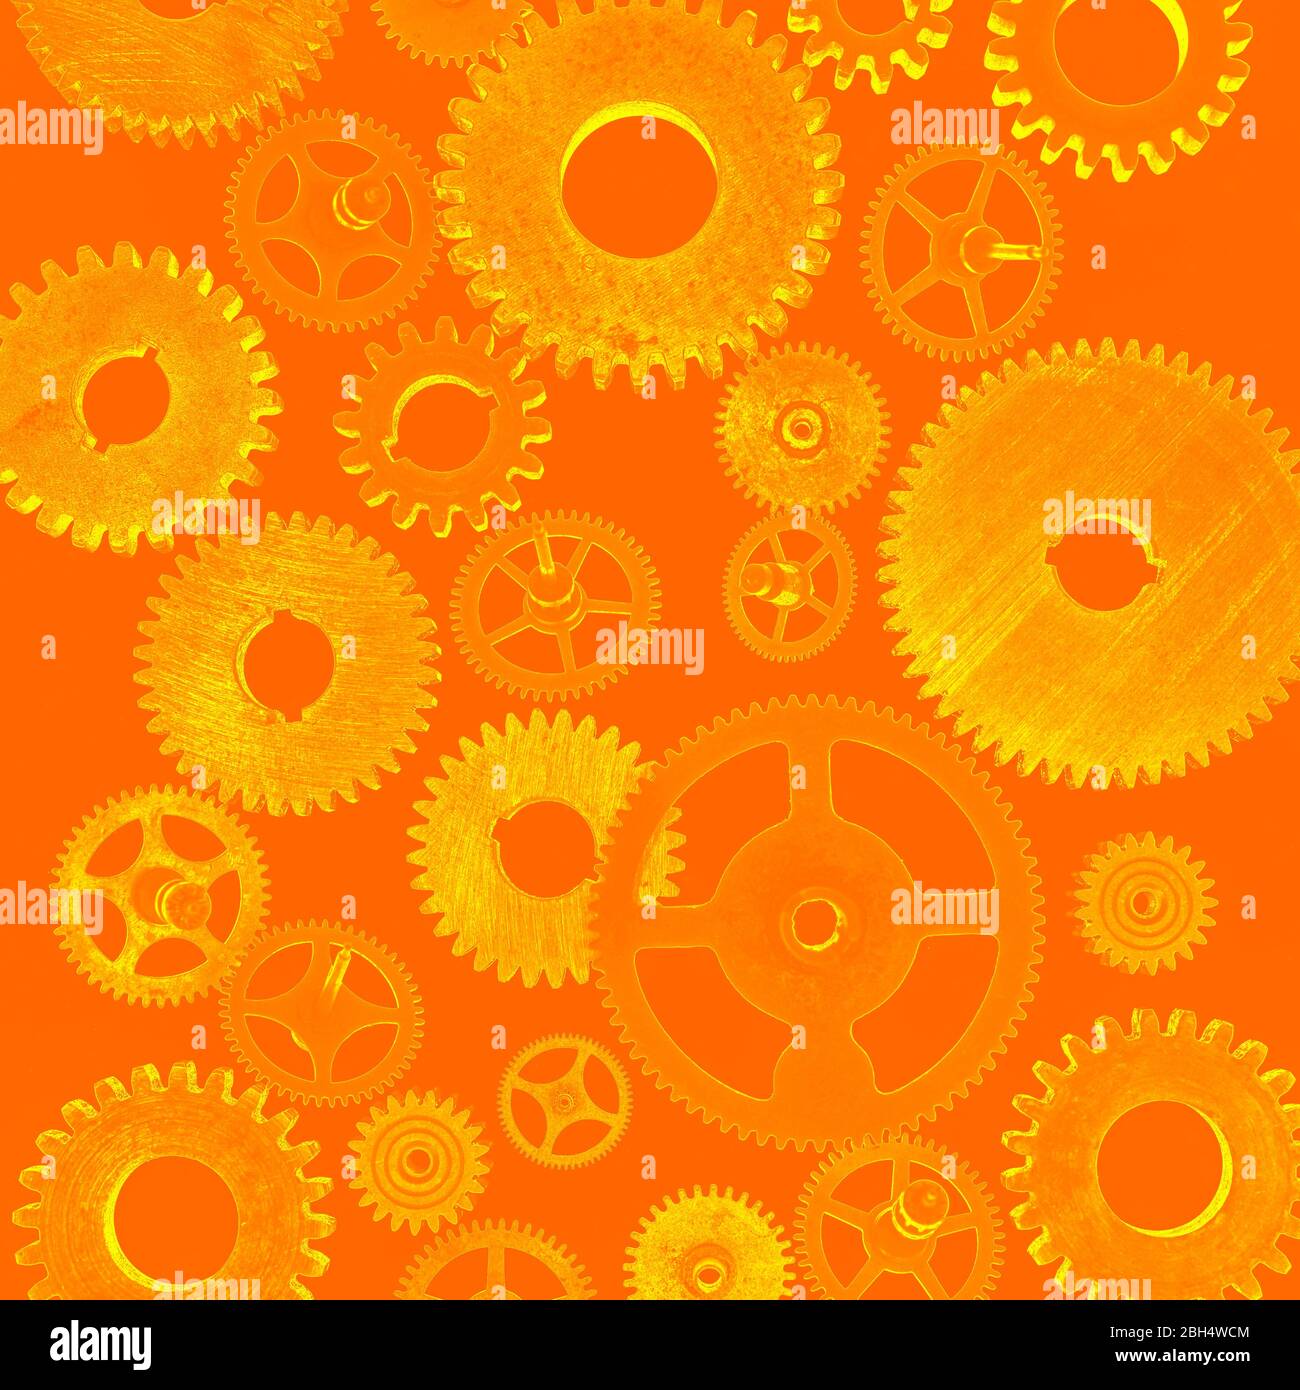 Abbildung von Zahnrädern auf orangefarbenem Hintergrund Stockfoto